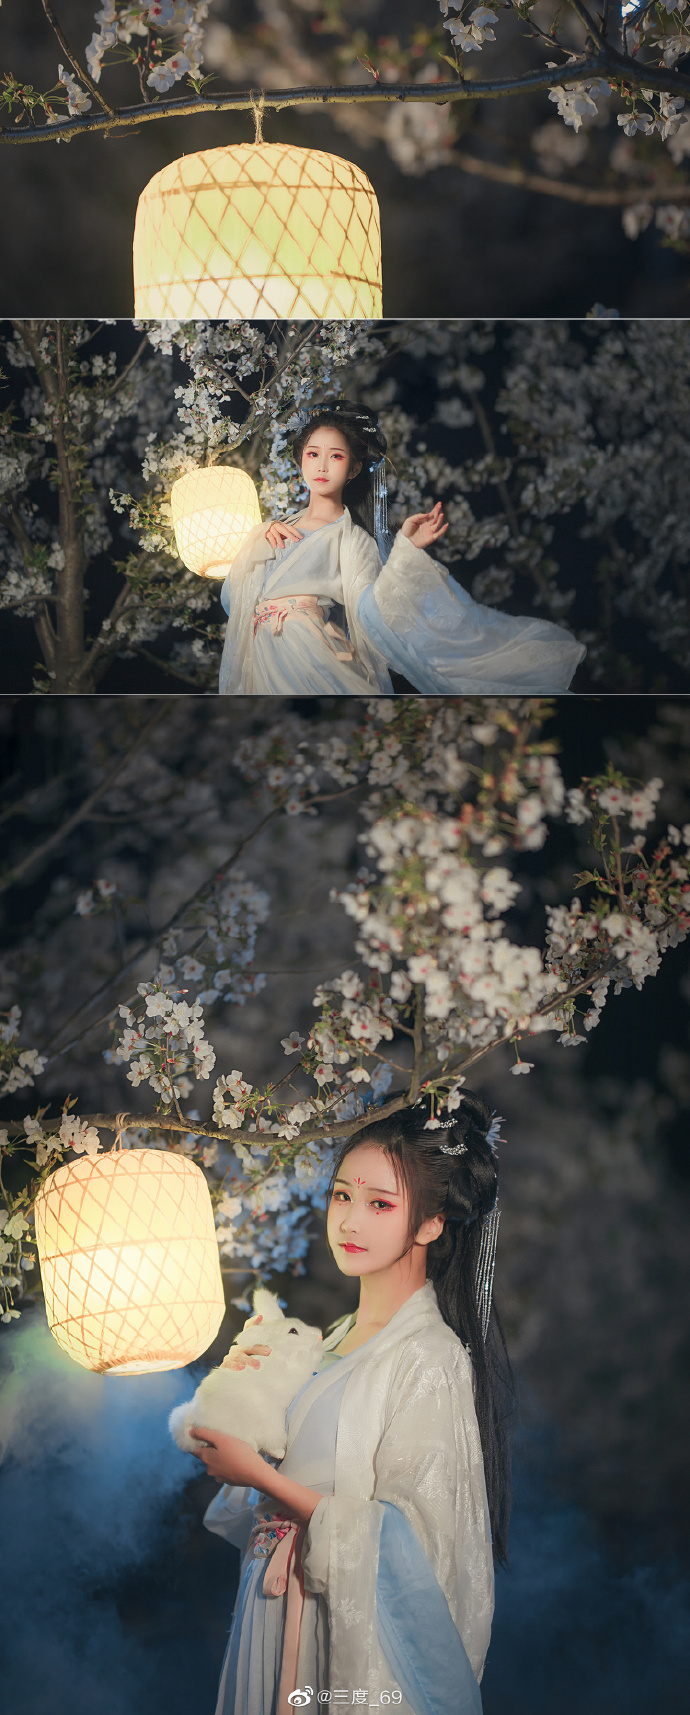 【汉服写真】广陵花月汉服正片,樱花树下的三度 美若天仙